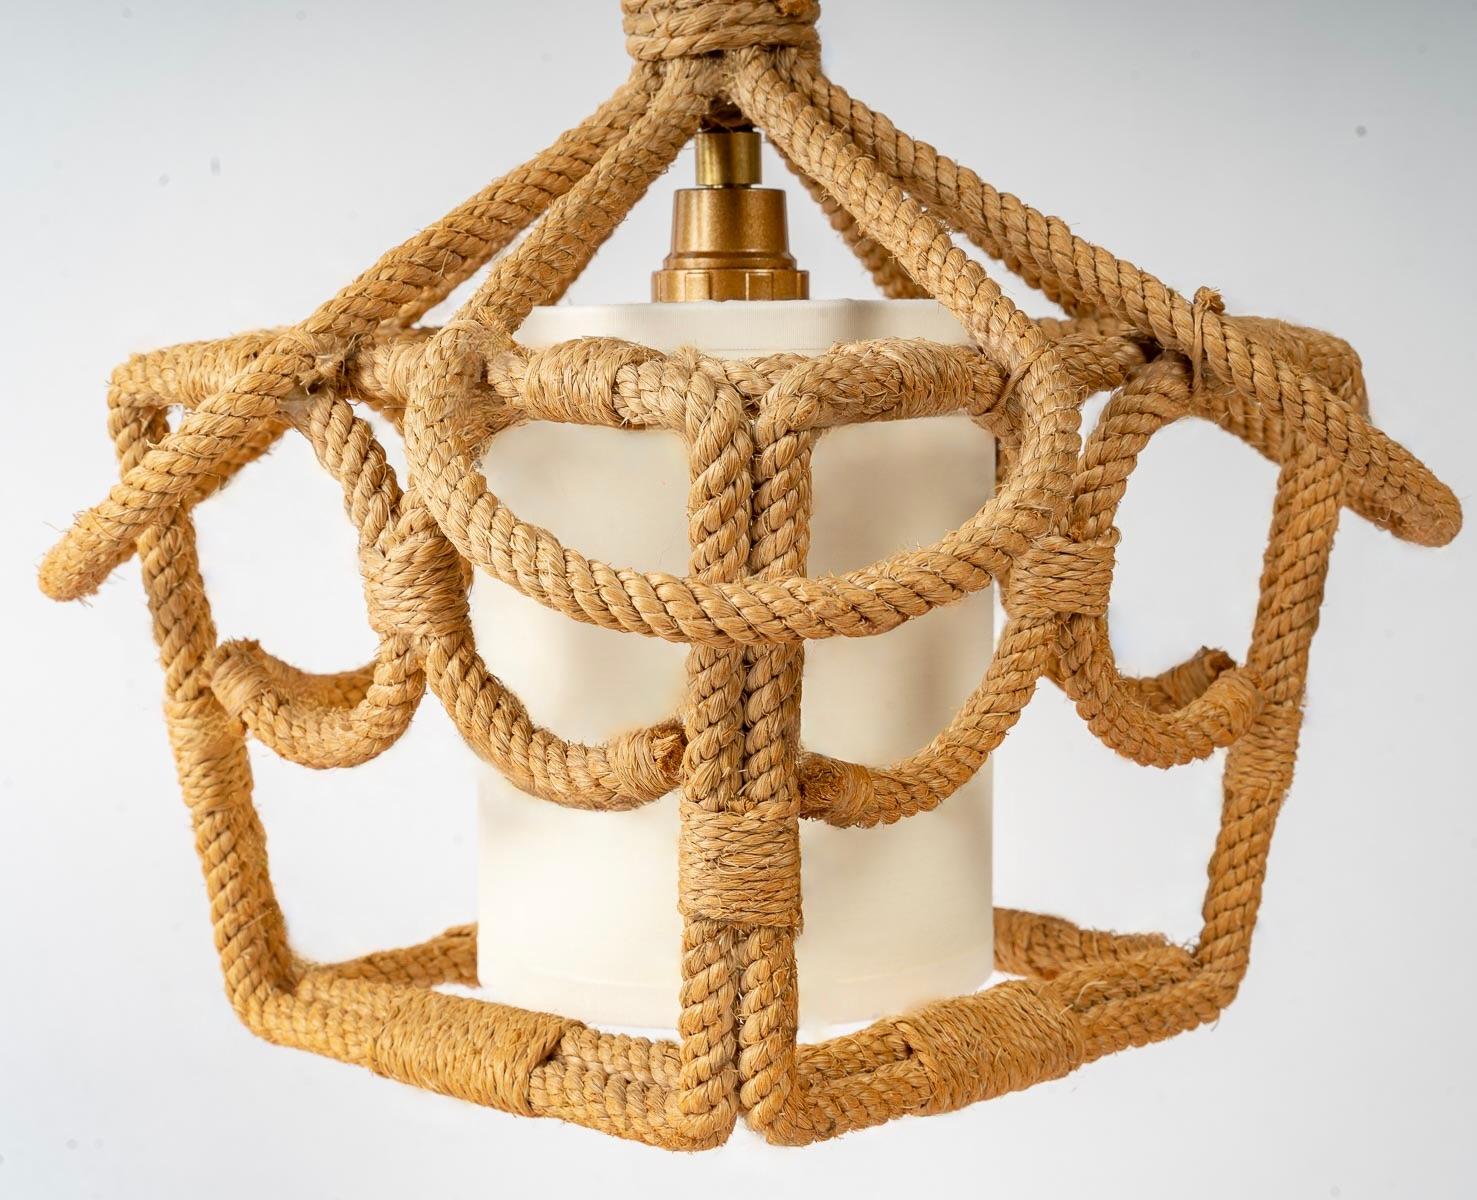 Composé d'une lanterne de section carrée en corde décorée d'enroulement de corde à l'intérieur des faces et soulignée sur la partie haute de quatre enroulements se rejoignant au centre et assemblés par un fil de corde.
Au-dessus se trouve la tige en